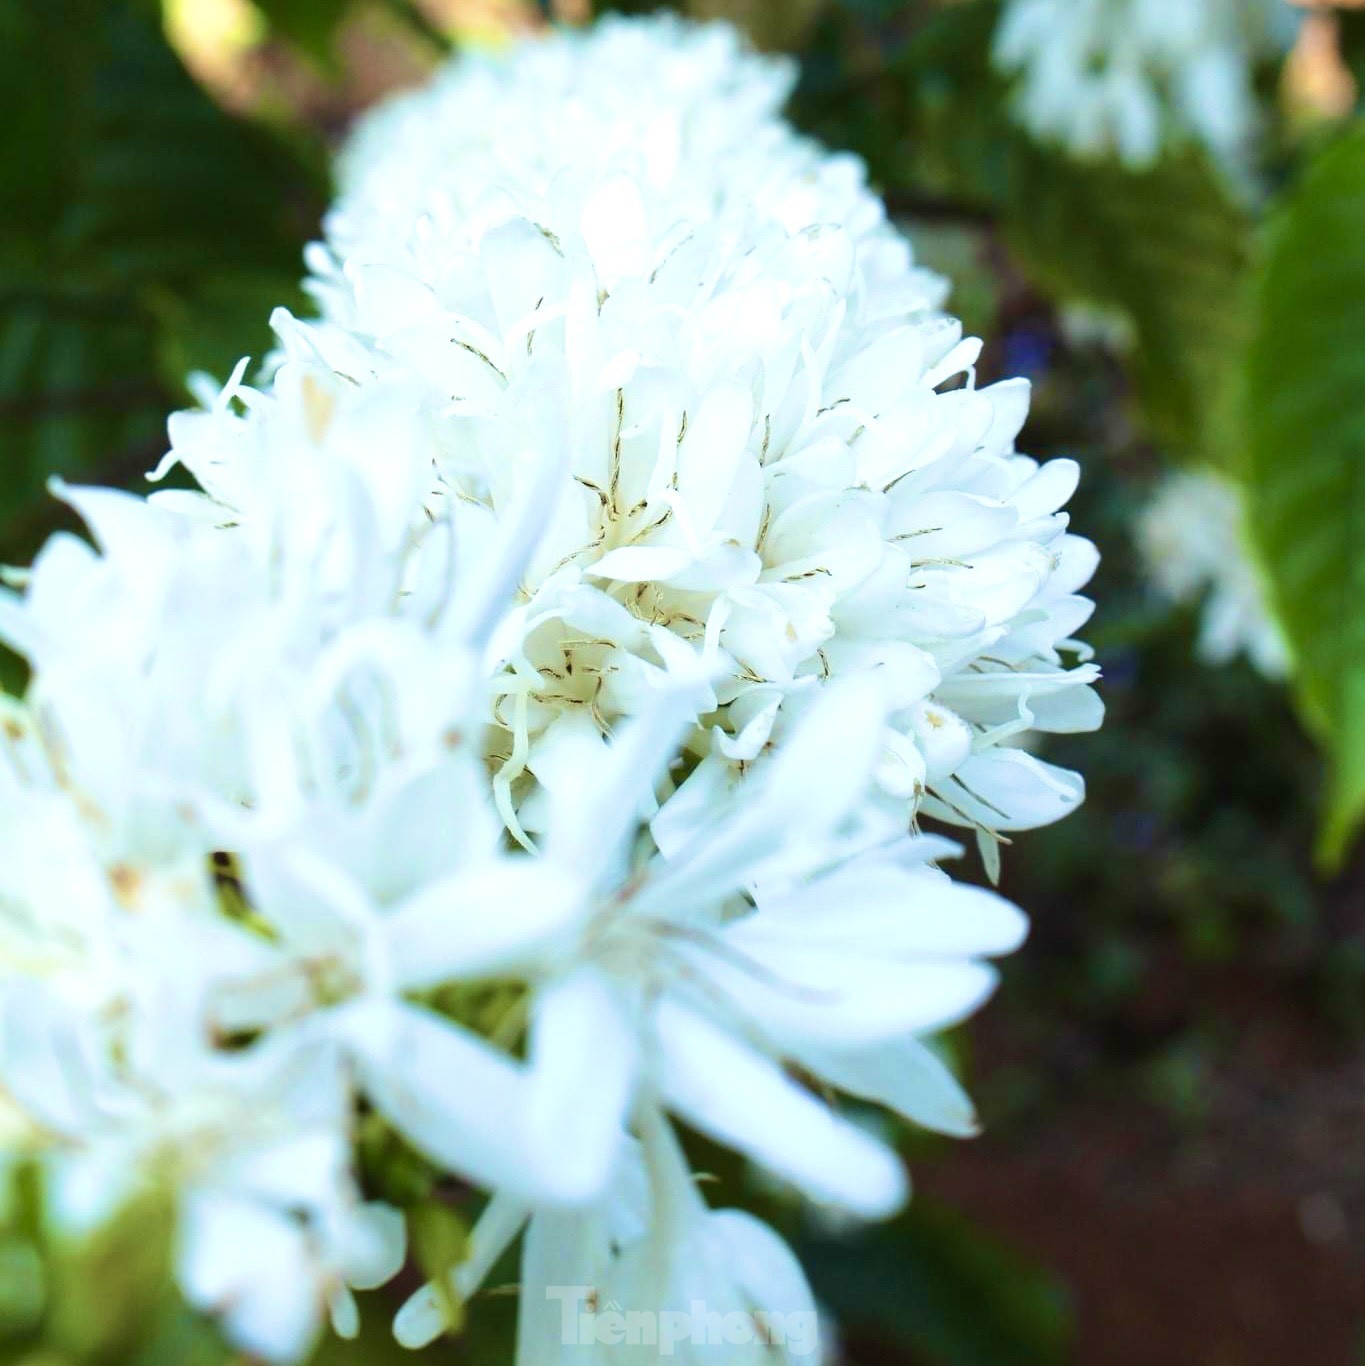 Mê mẩn mùa hoa cà phê nở trắng, tỏa hương ngọt ngào Tây Nguyên - Ảnh 3.